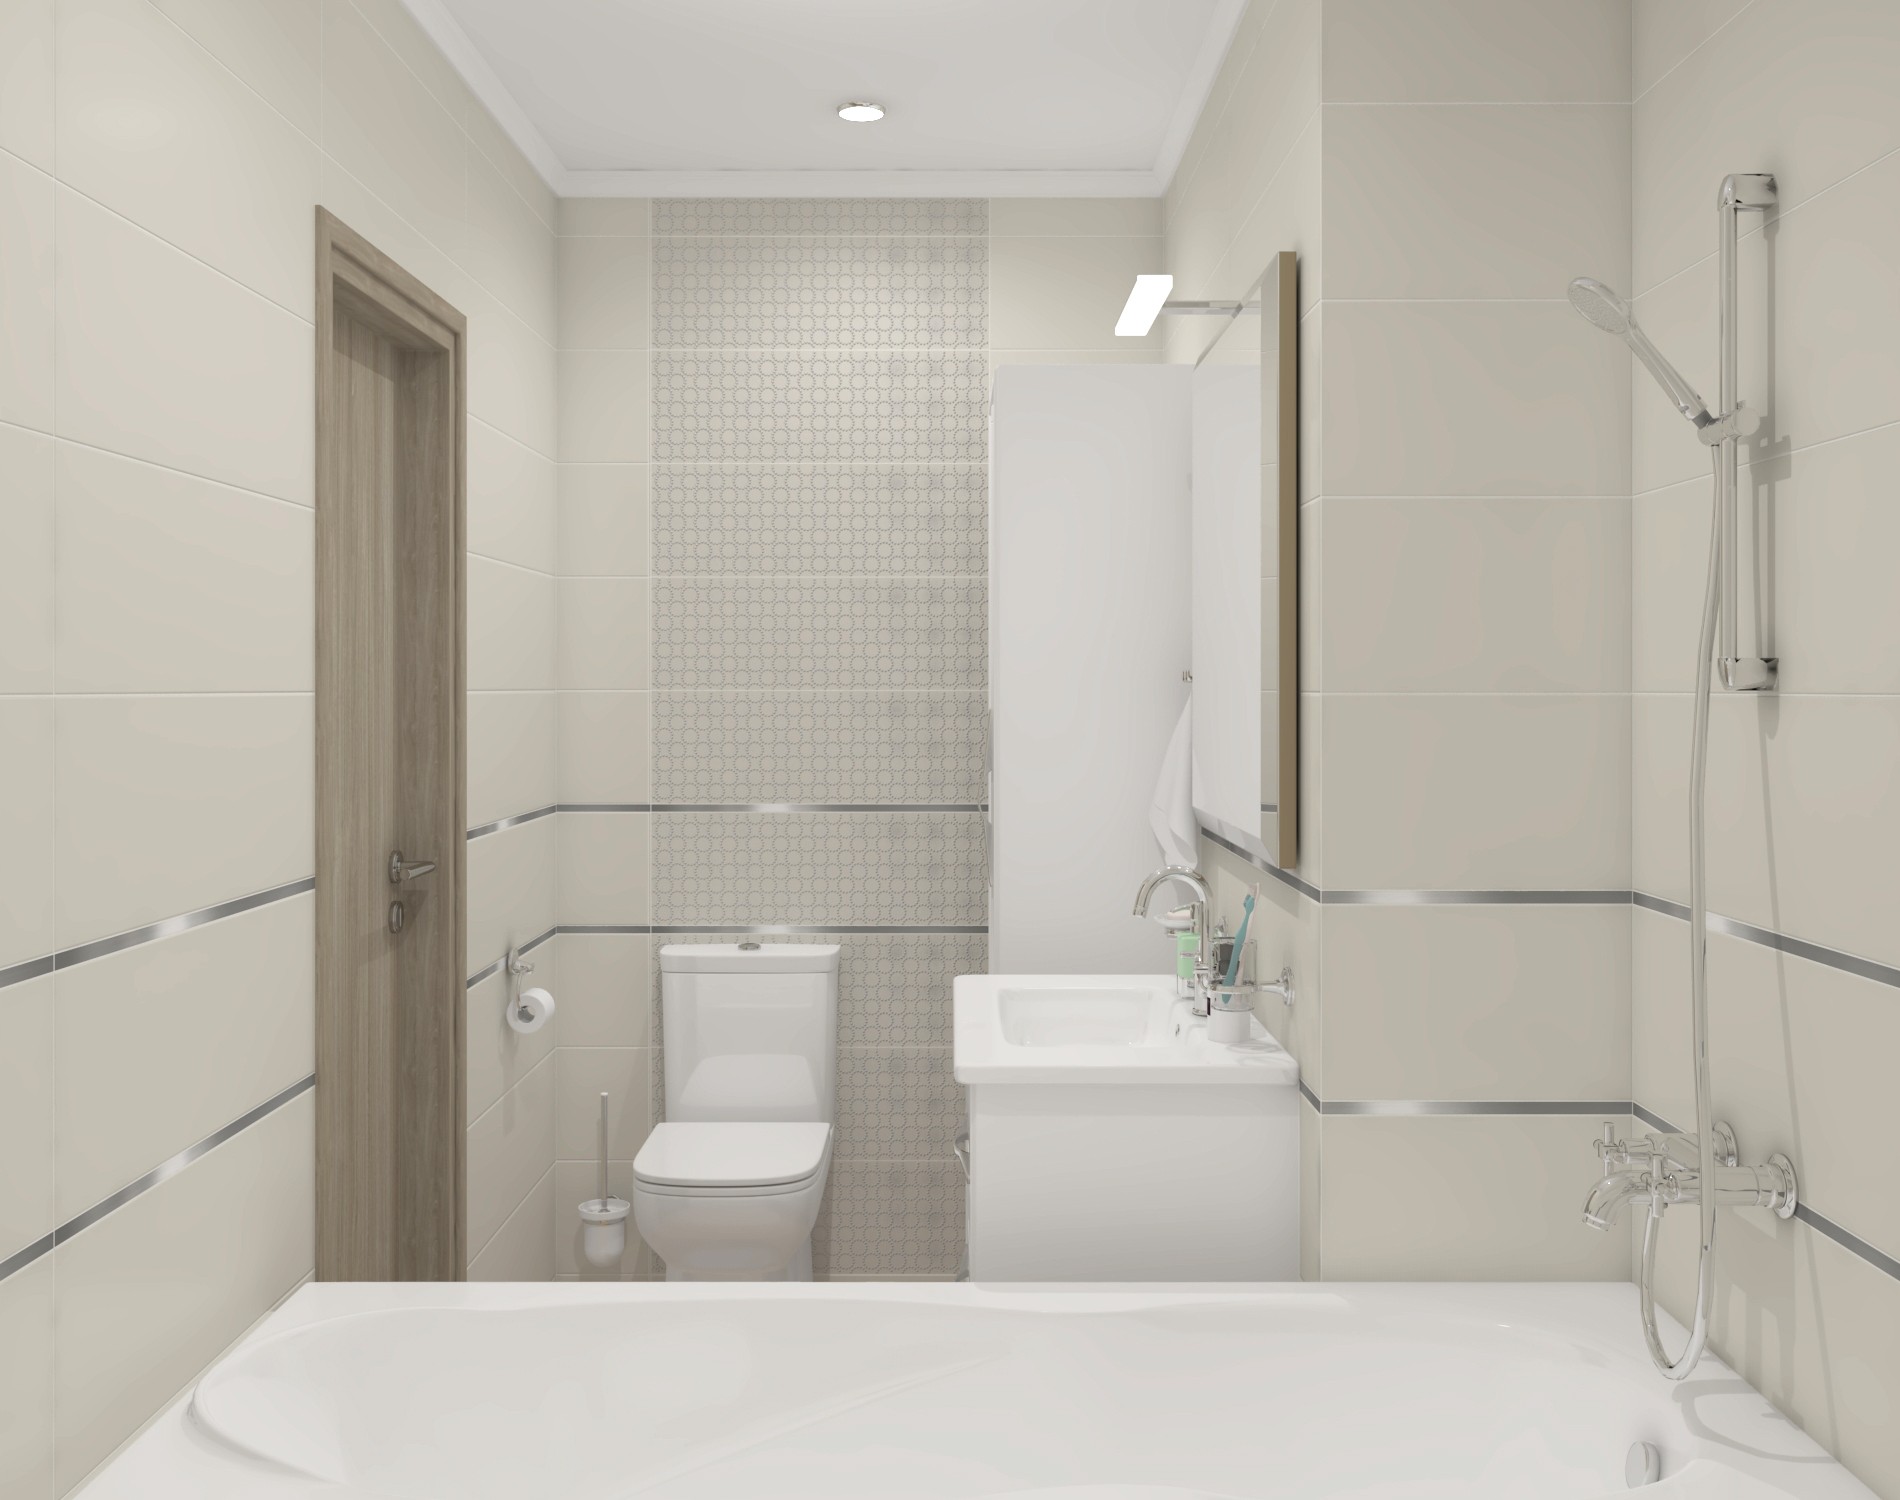 Фото ремонта ванной комнаты малых размеров, советы дизайнеров